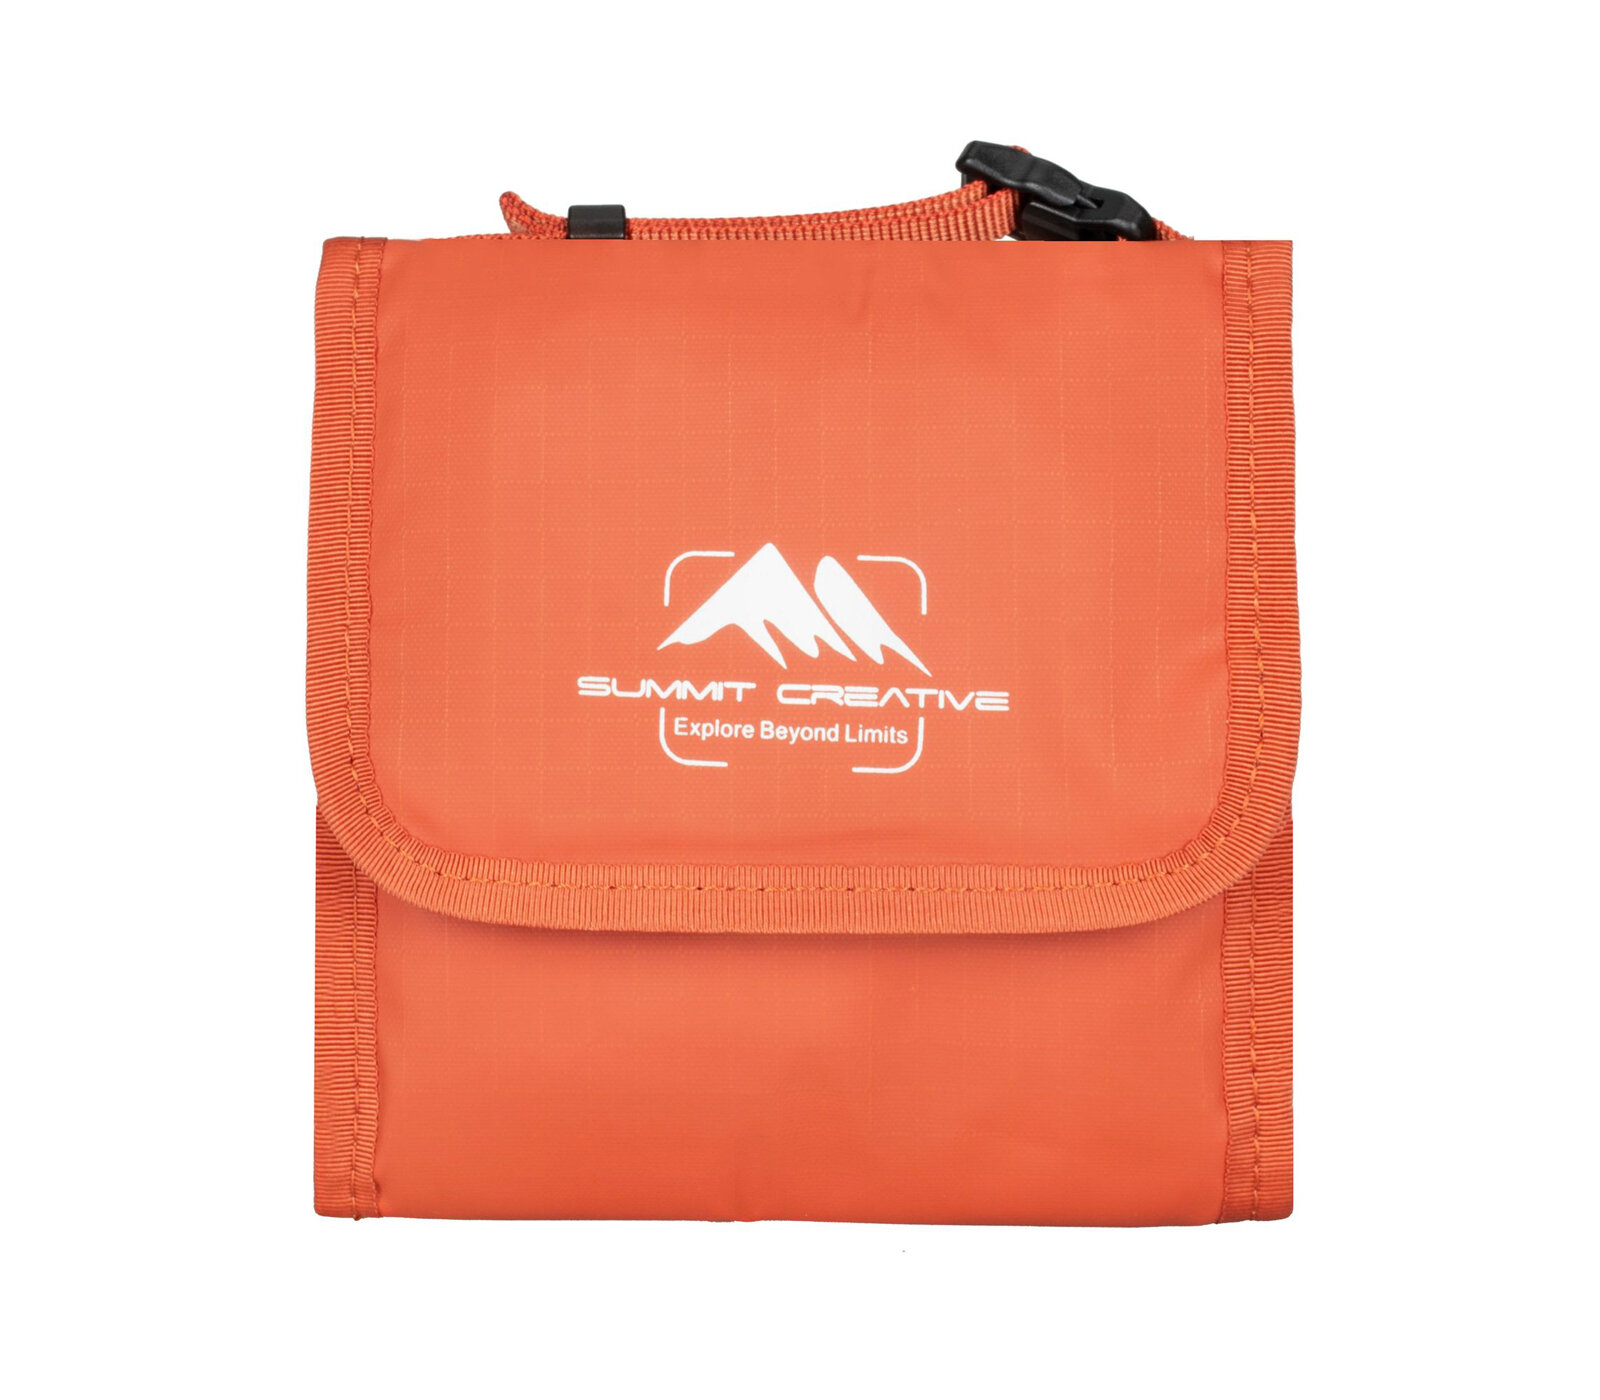 Чехол Summit Creative Filter Bag 100-5, для 5 светофильтров до 100 мм, оранжевый